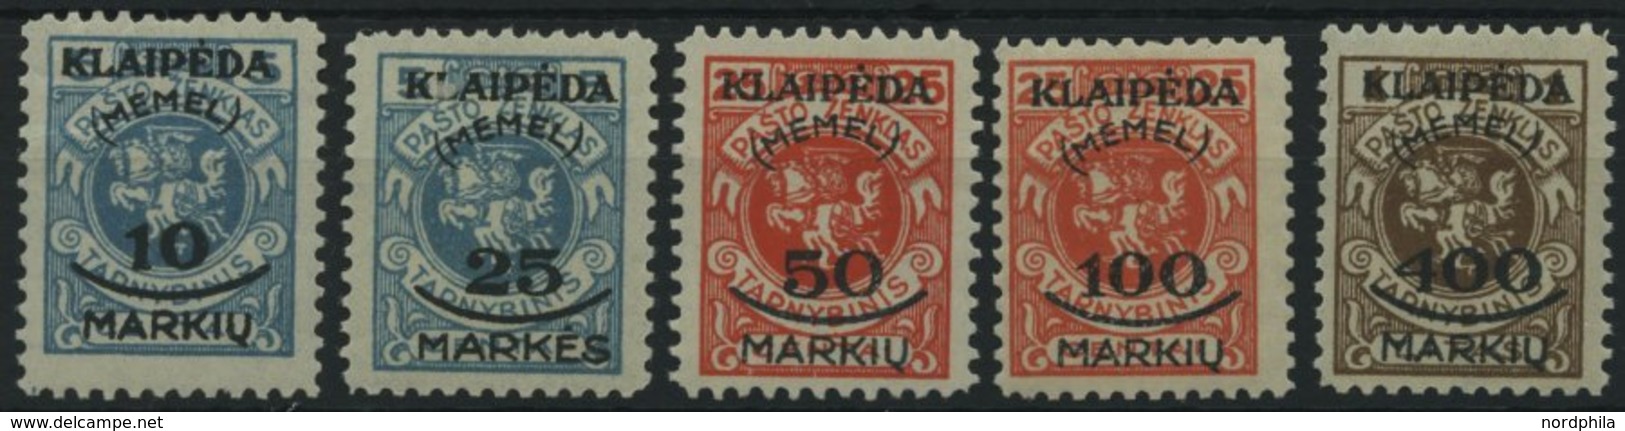 MEMELGEBIET 124-28 **, 1923, Staatsdruckerei Kowno, Postfrisch, 10 M. Kleine Gummiknitter Sonst Prachtsatz, Mi. 120.- - Klaipeda 1923